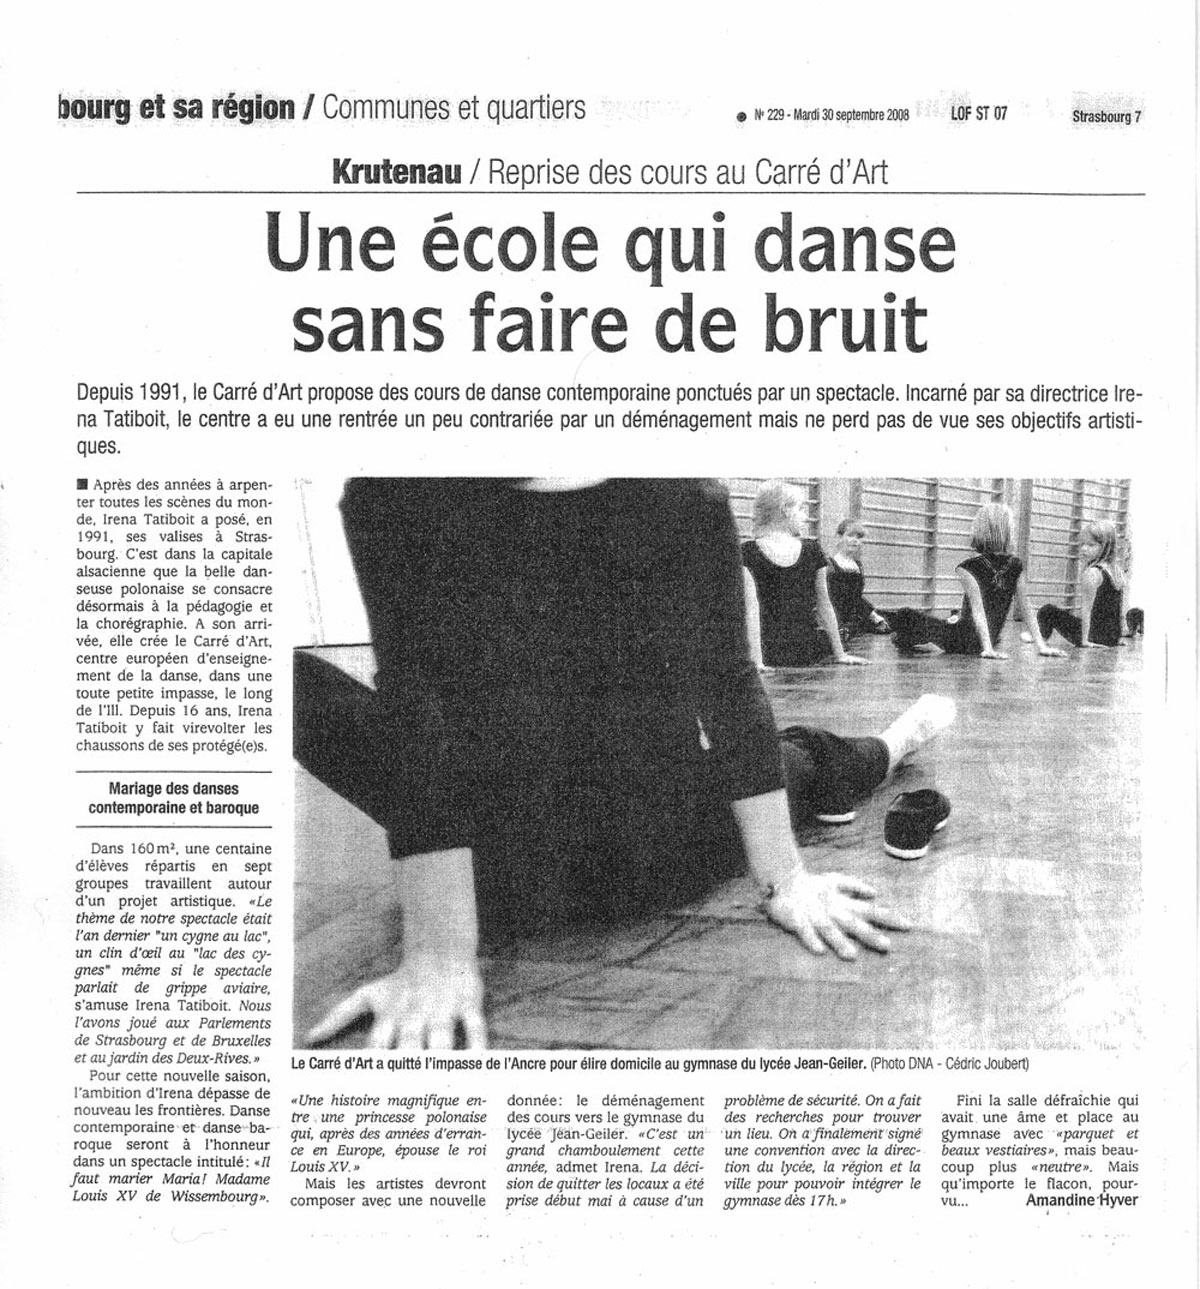 Le Carré d'Art, dance school in Strasbourg - DNA 30 Septembre 2008, 